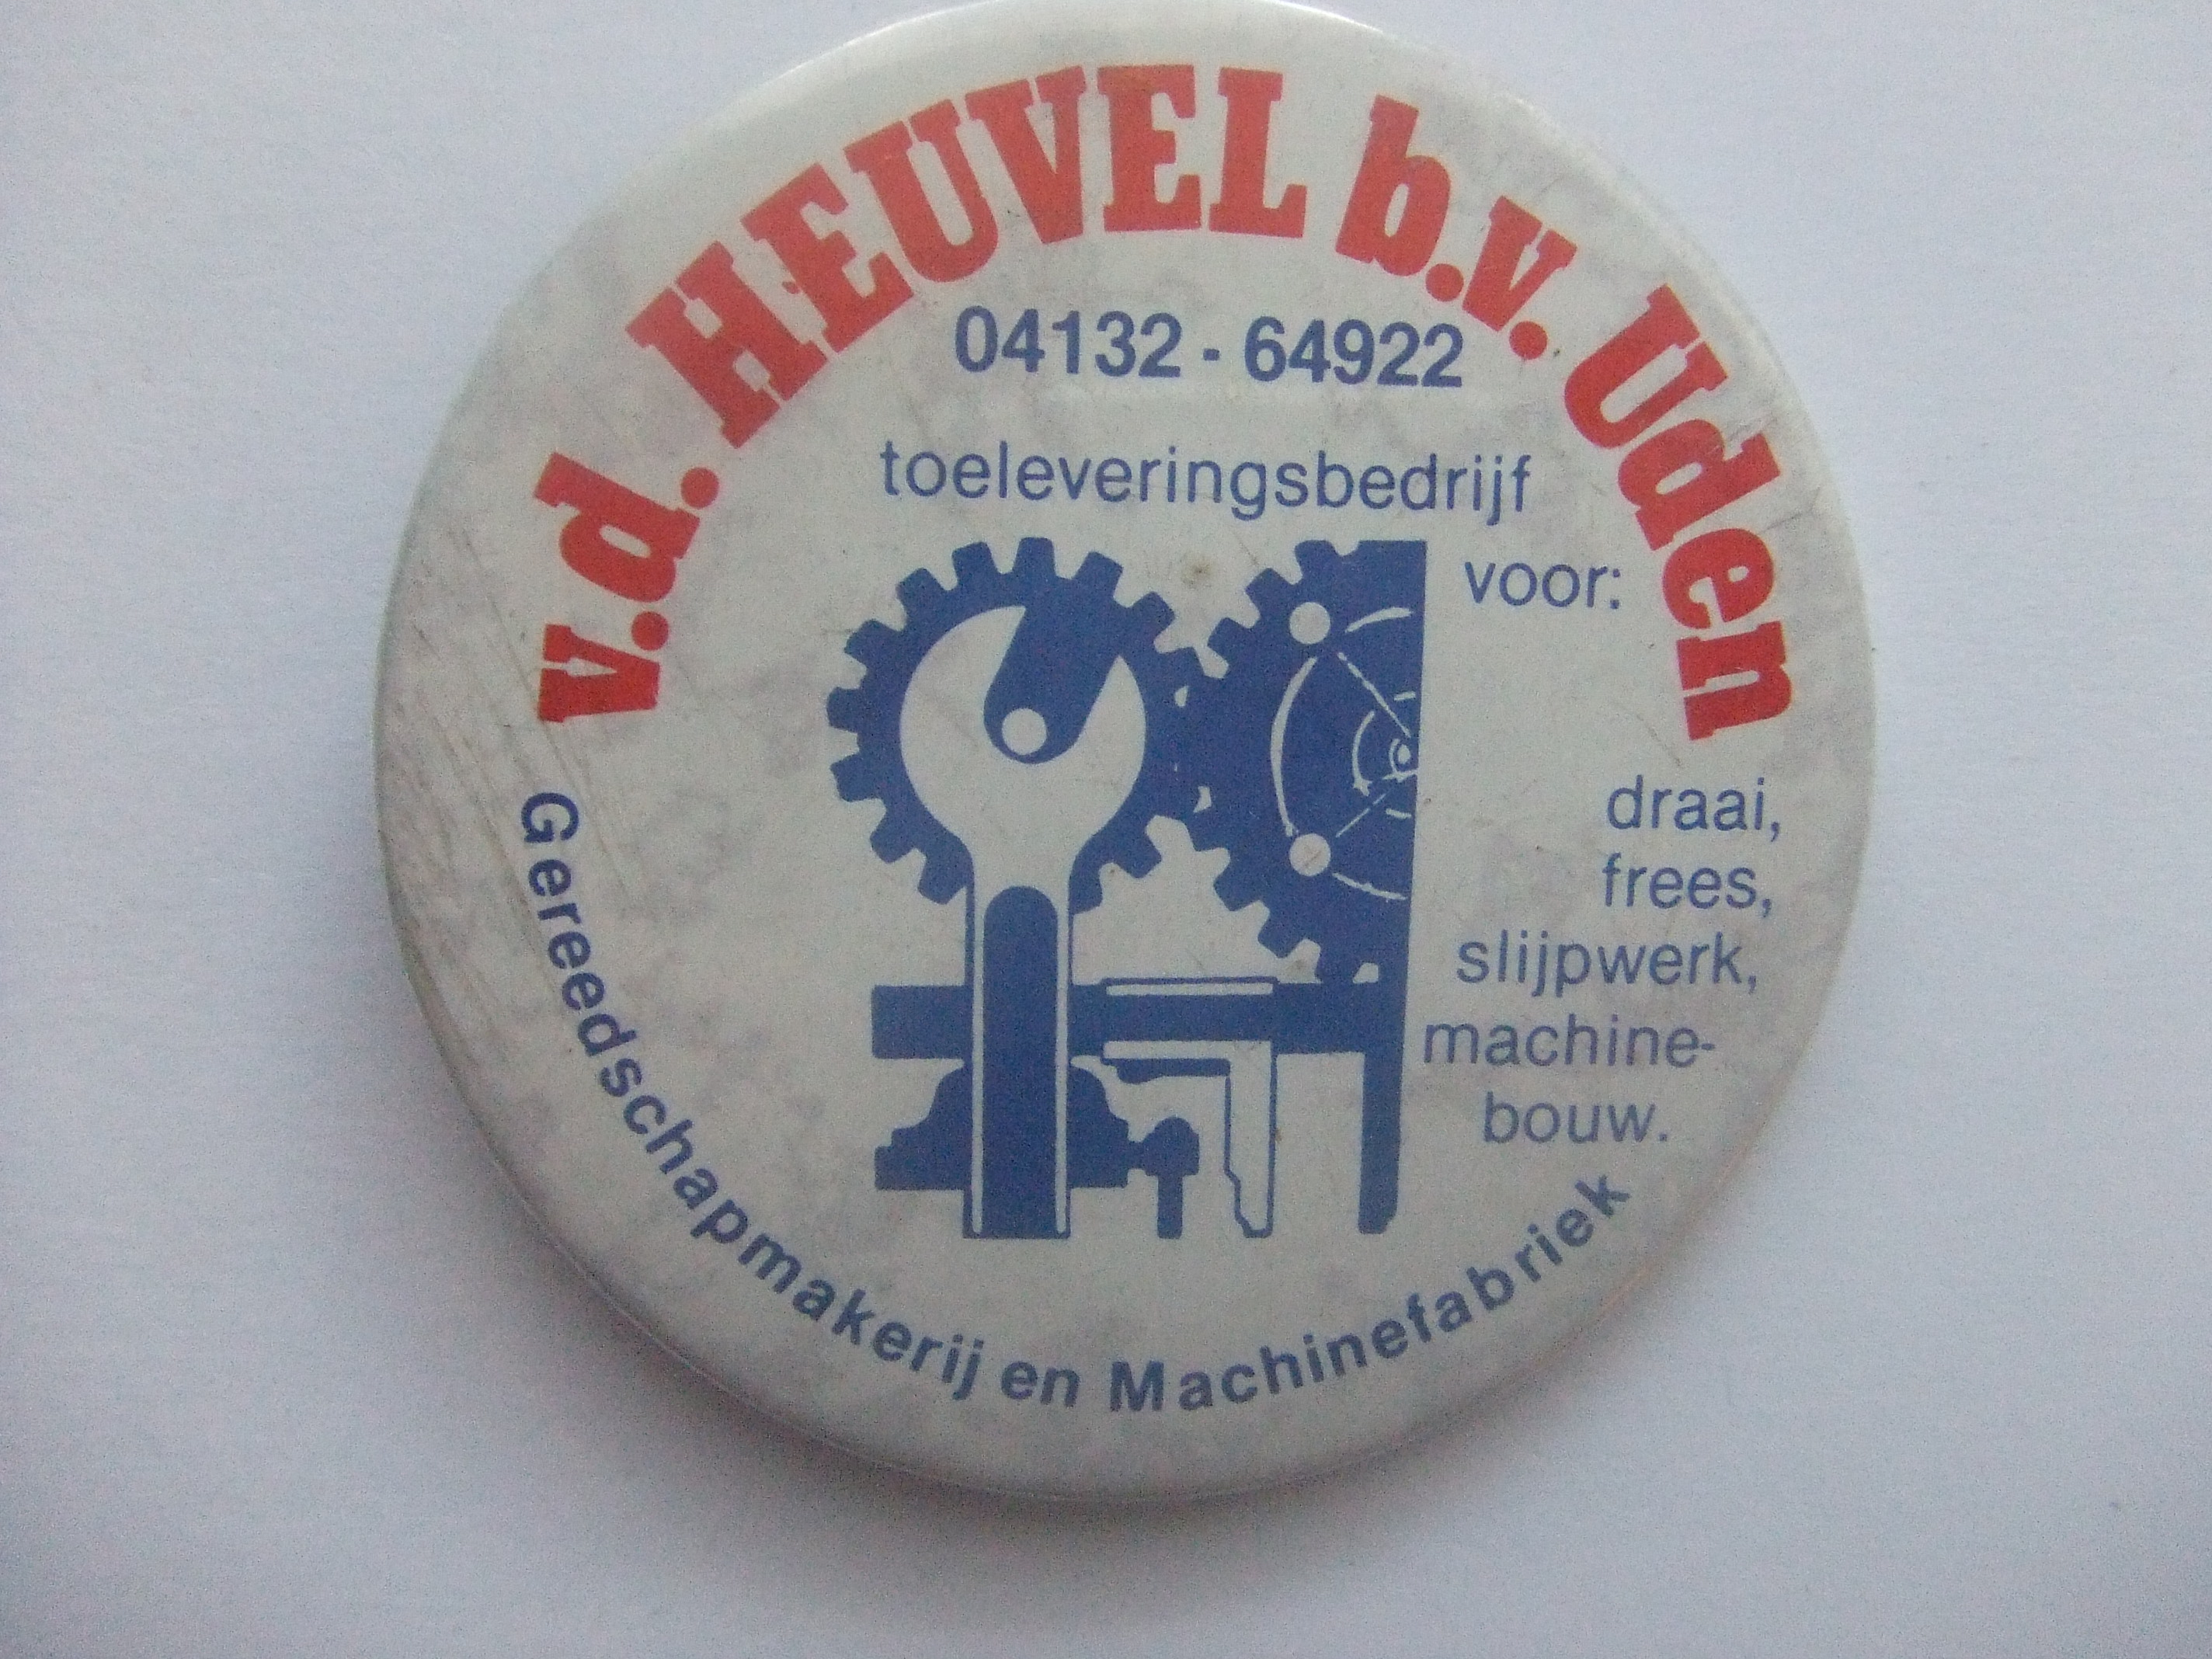 V.D. Heuvel gereedschapmakerij,machinefabriek Uden